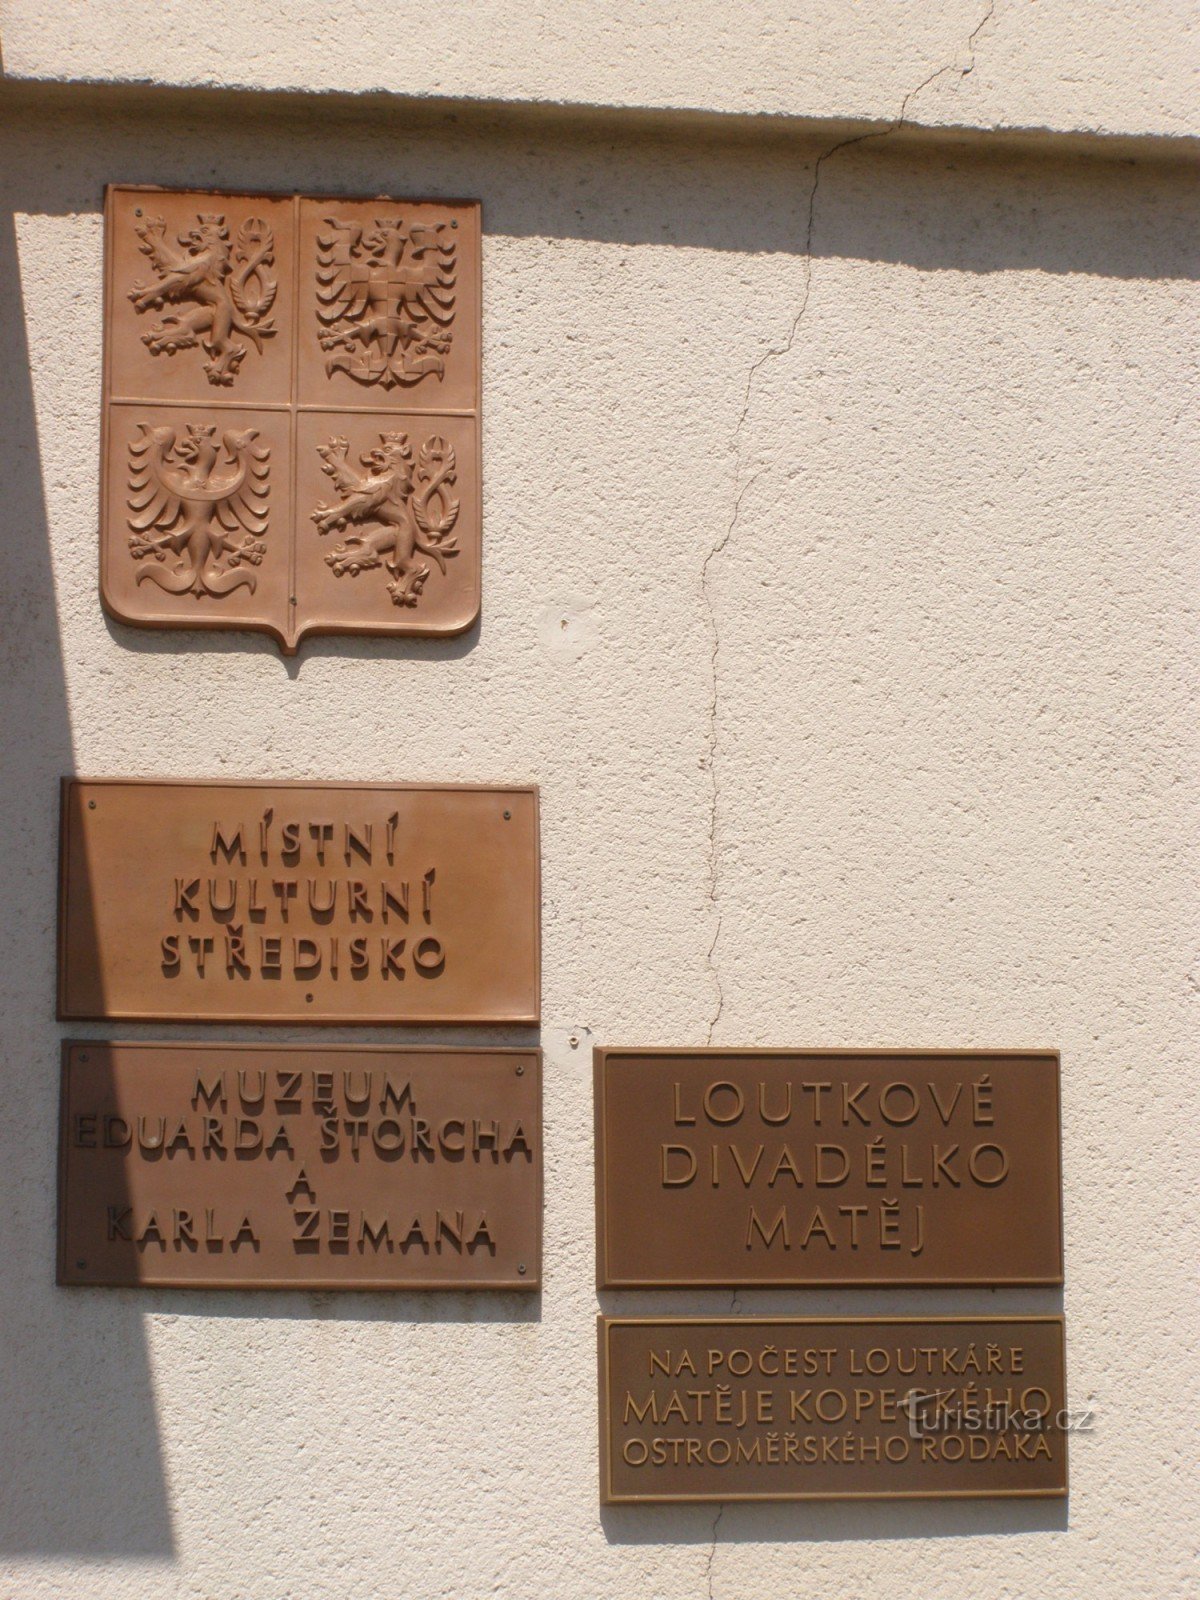 Ostroměř - muzej Eduarda Štorcha in Karla Zemana